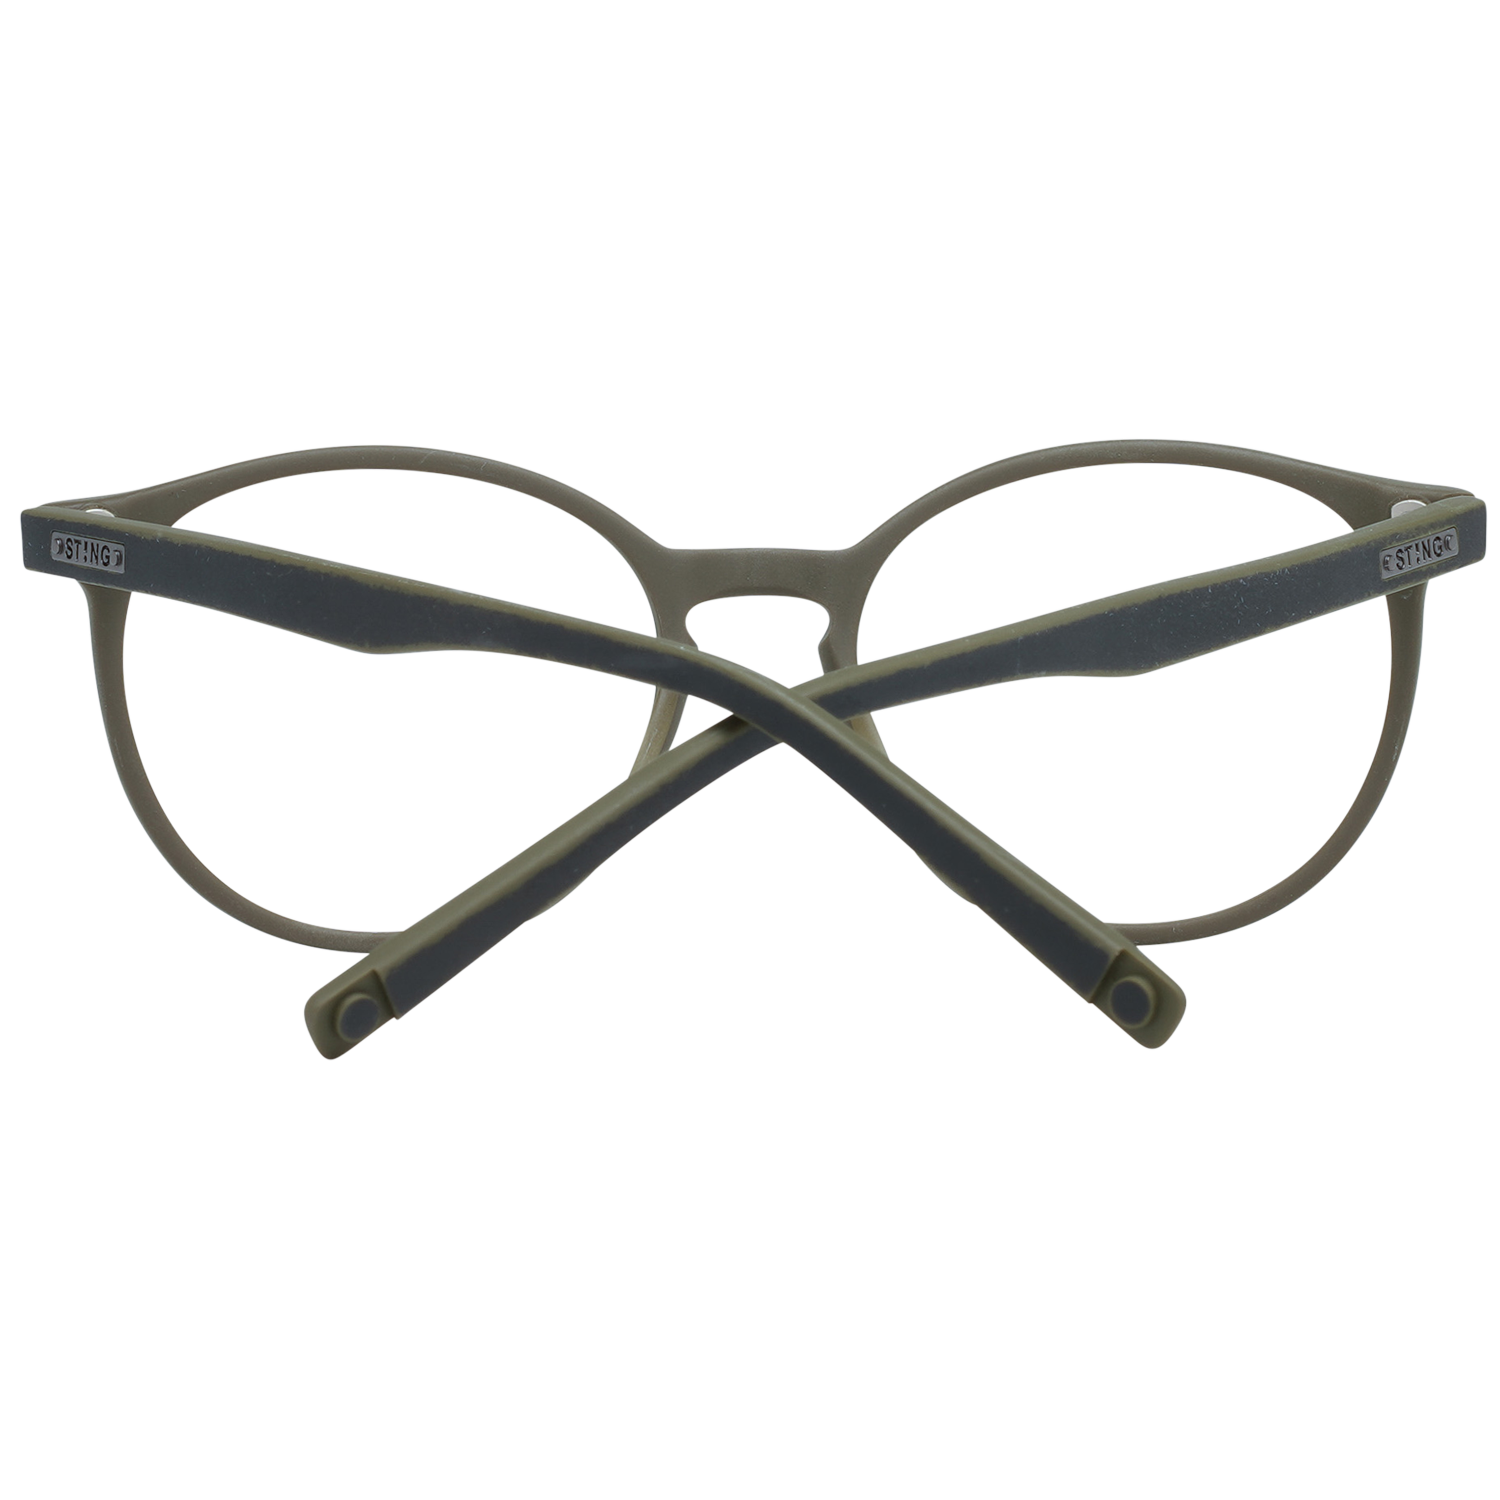 Sting Frames Sting Optical Frame VST039 90YM 49 Eyeglasses Eyewear UK USA Australia 